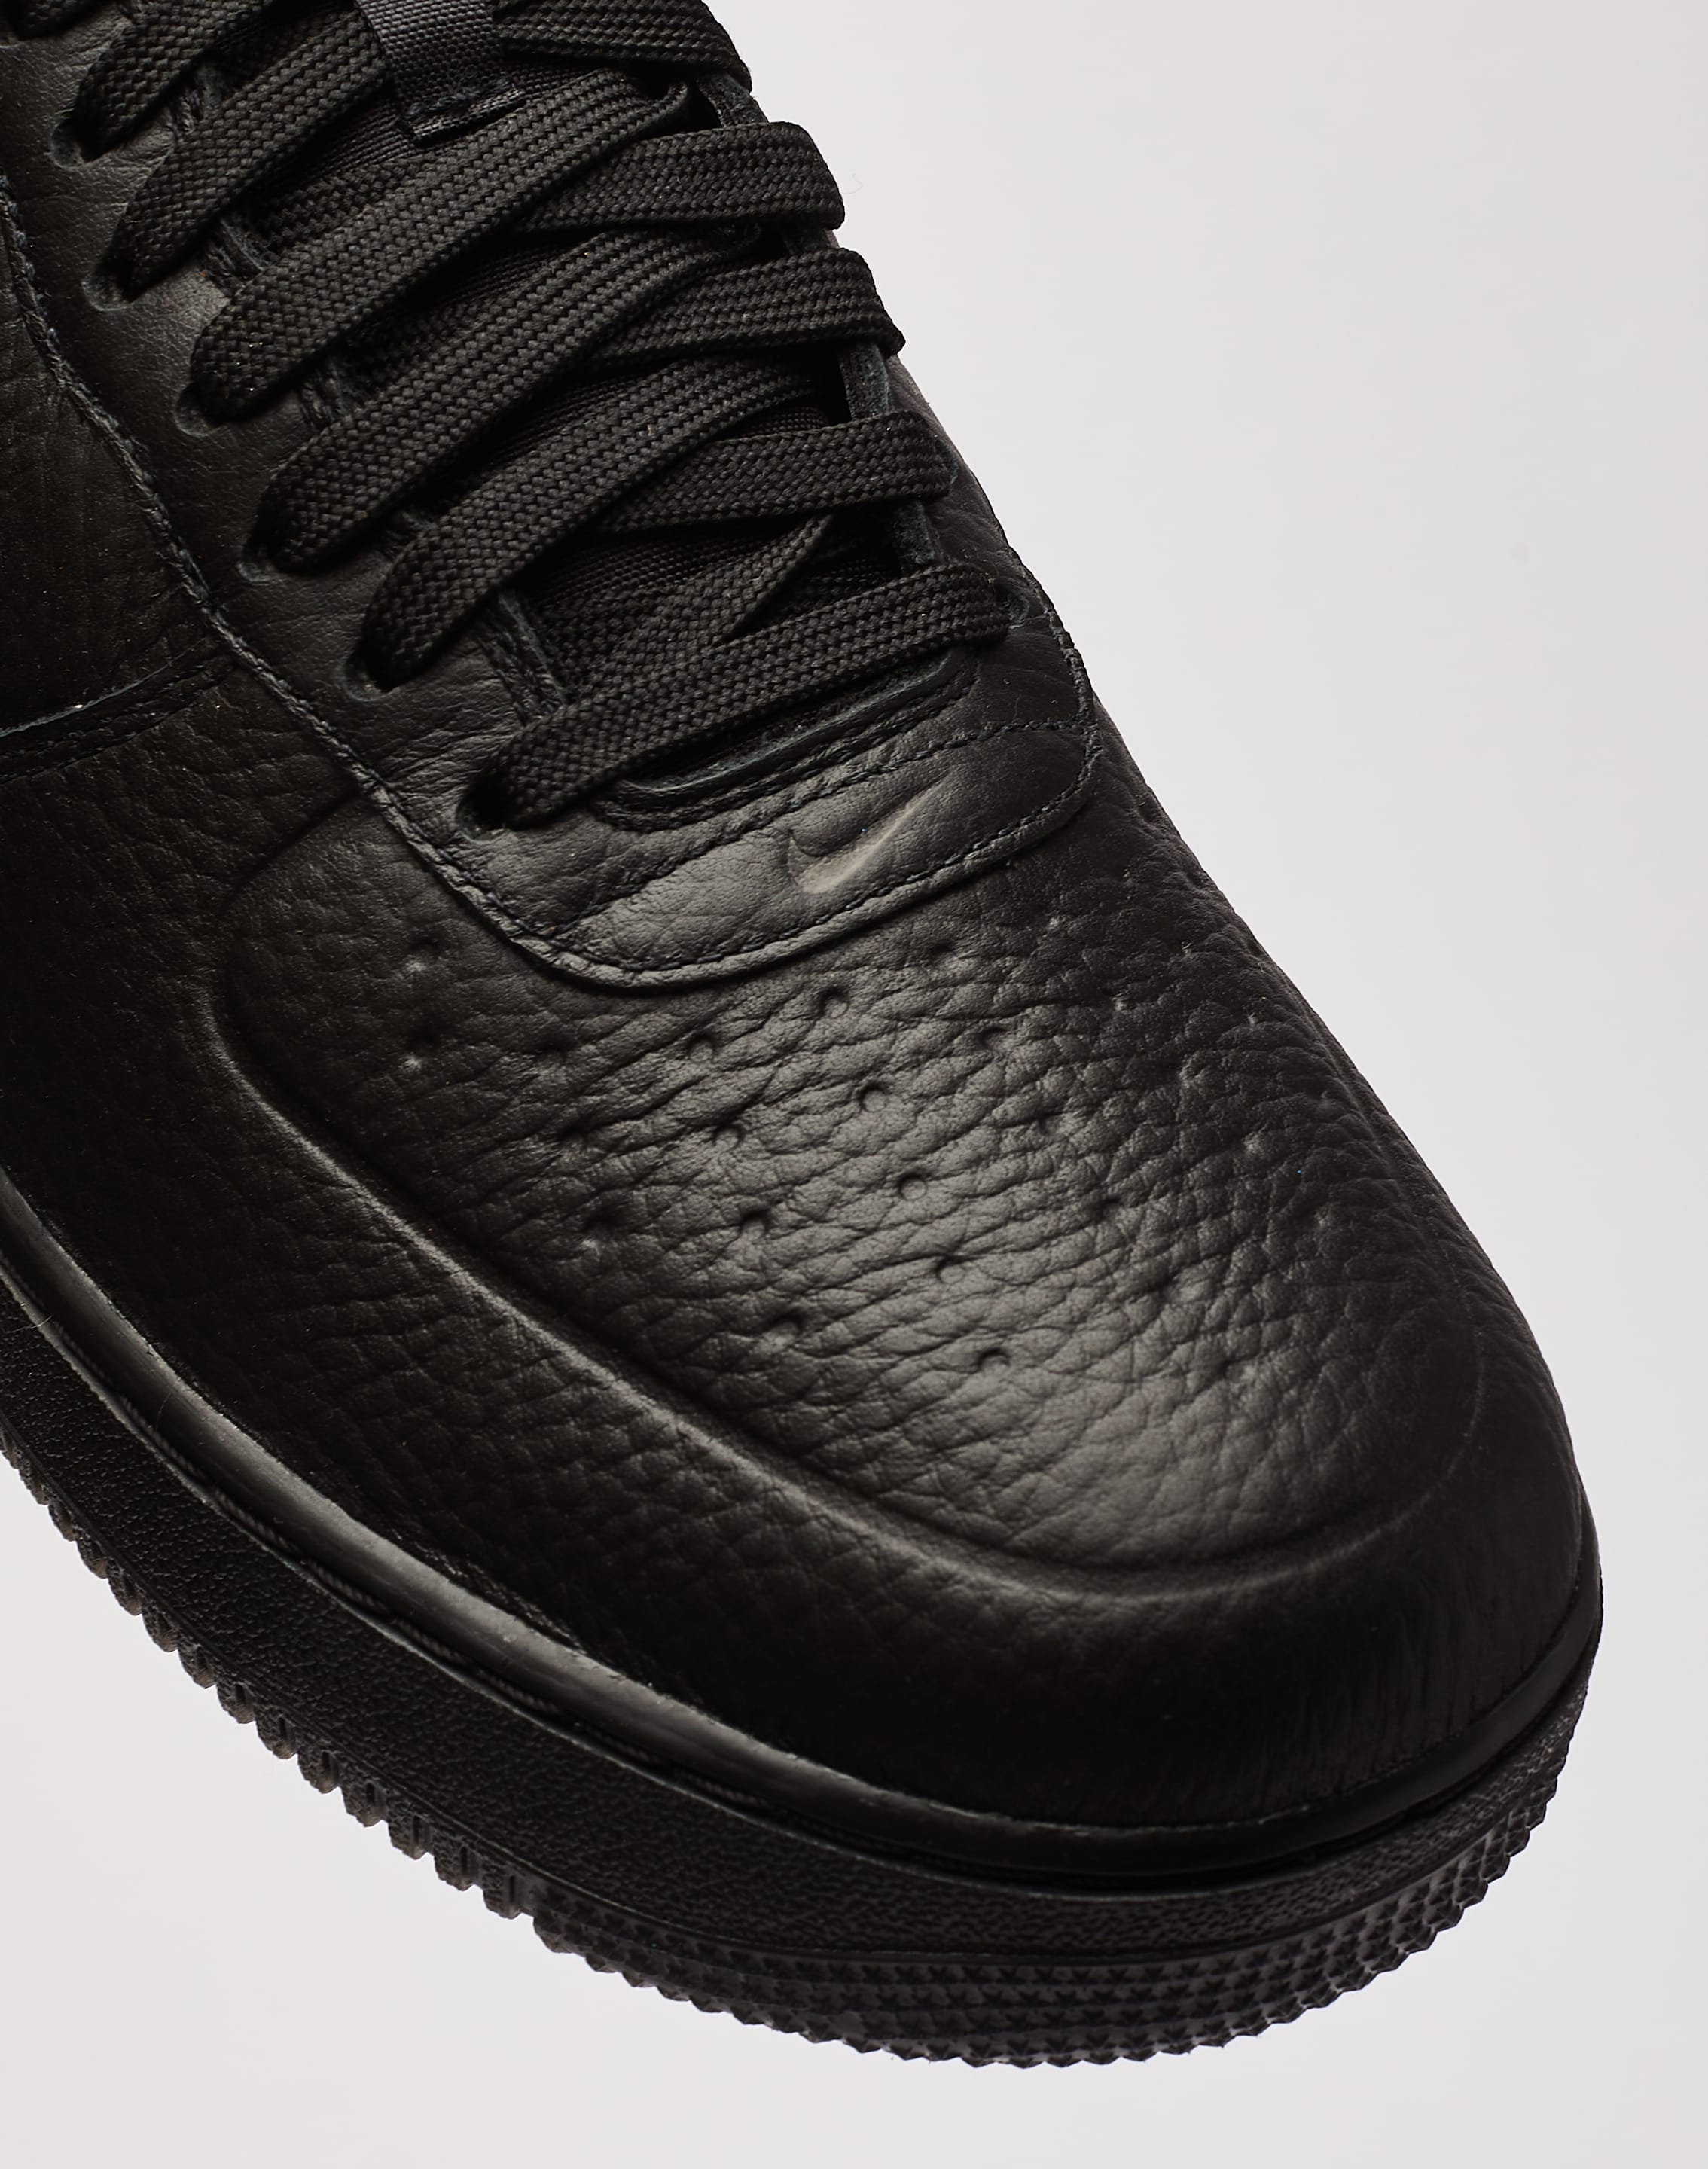 Nike Air Force 1 Low Waterproof 'Triple Black' Release Date